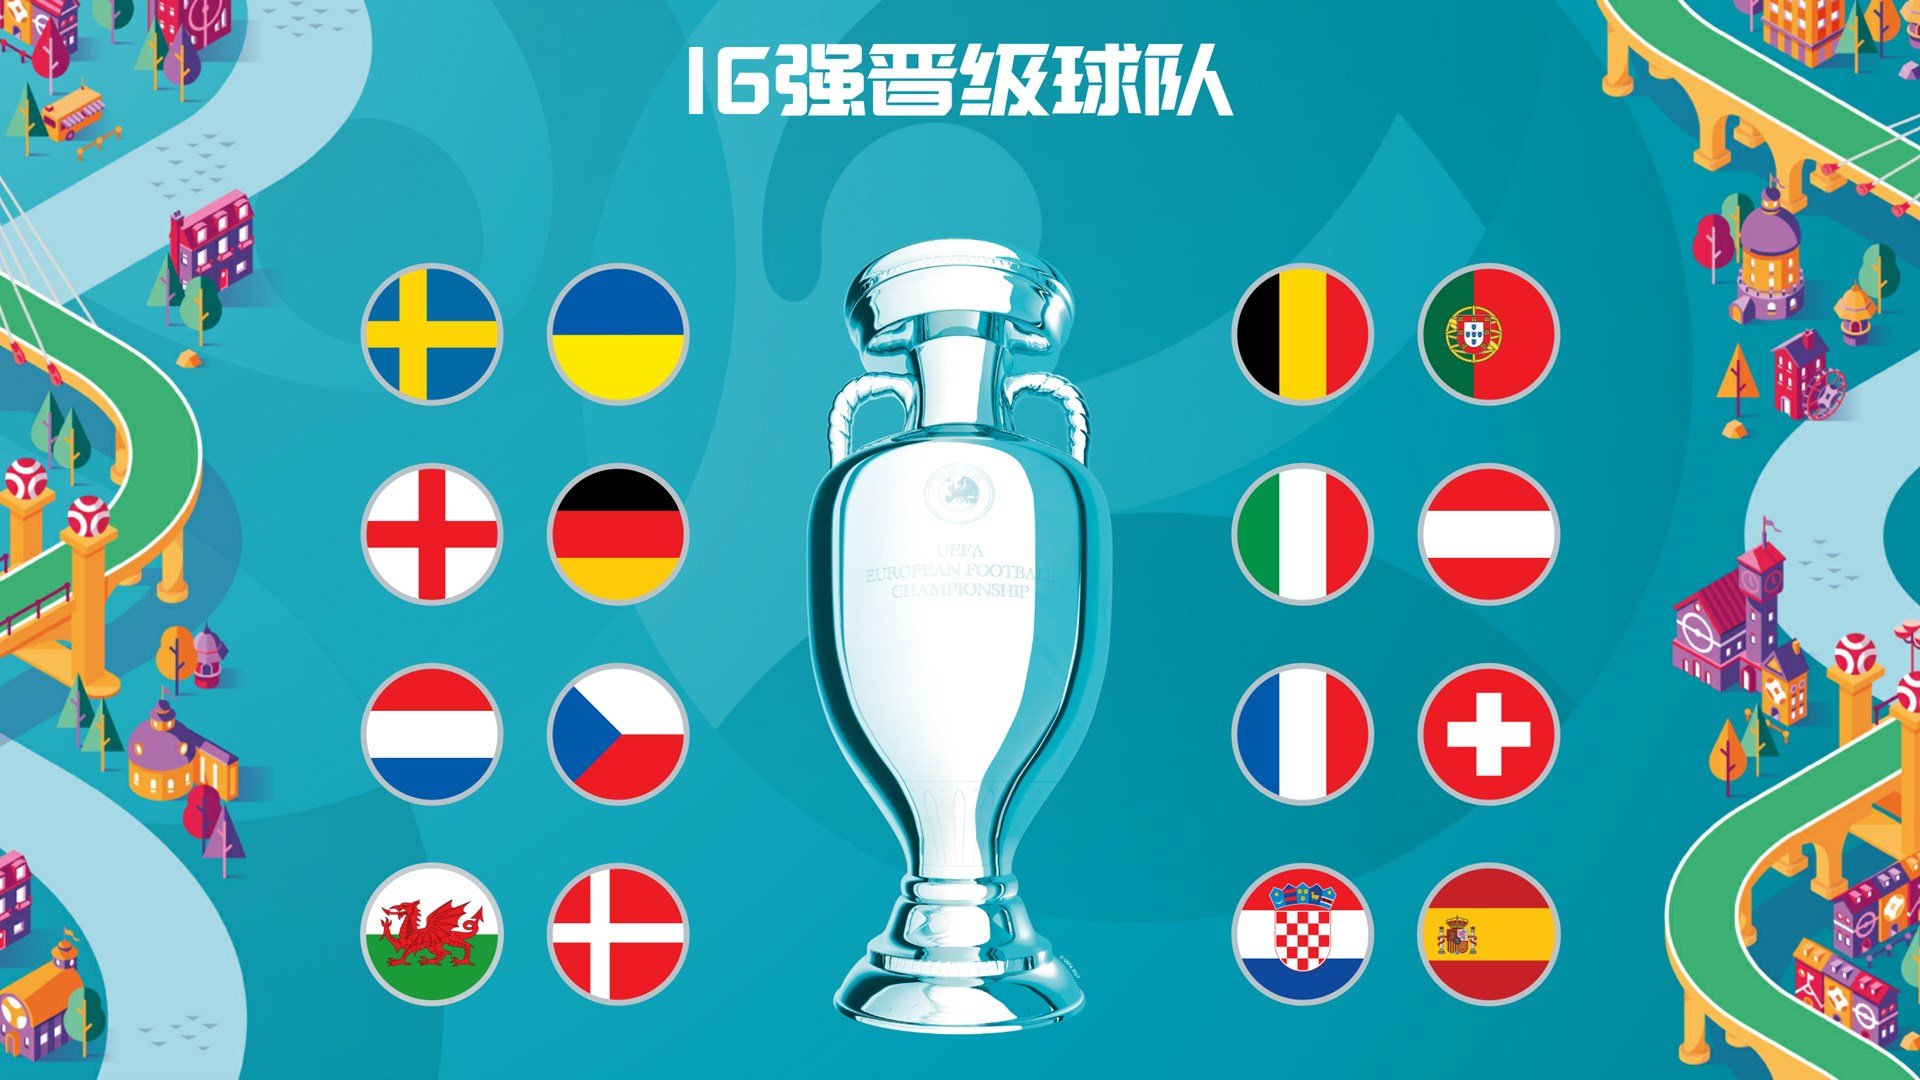 今晚欧洲杯赛程法国和瑞土比分预测,今晚欧洲杯瑞士 - DJ赛事 - NIDJ